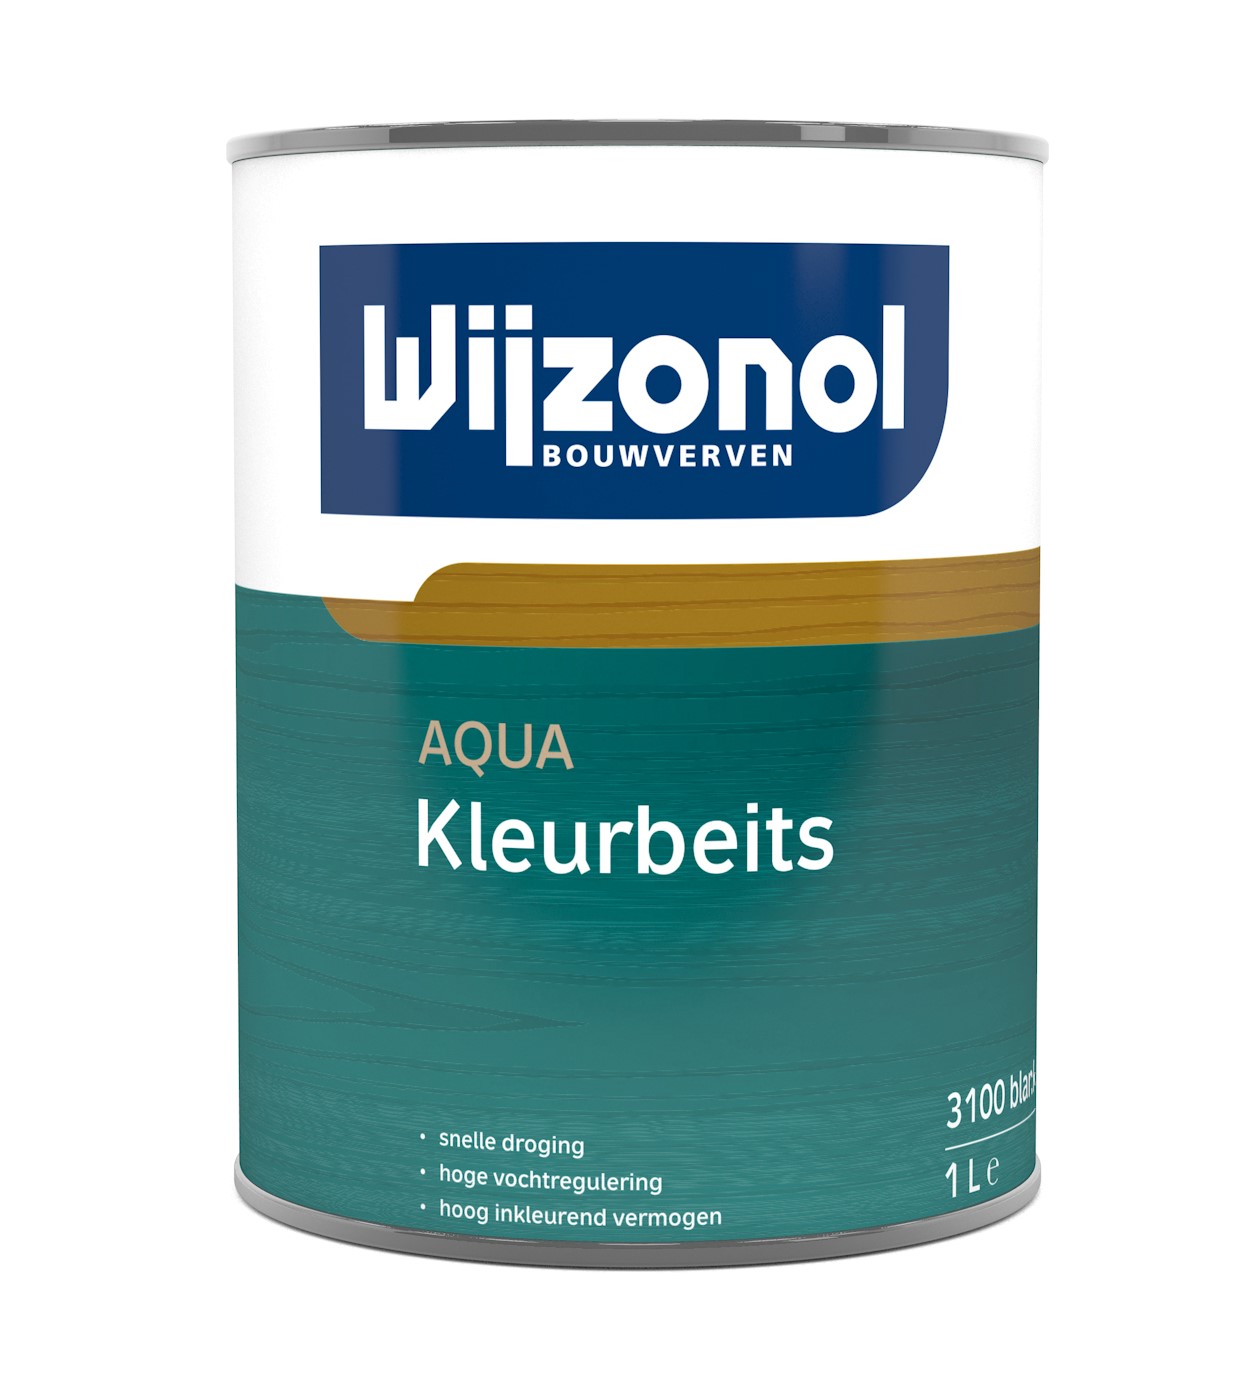 Wijzonol Aqua Kleurbeits